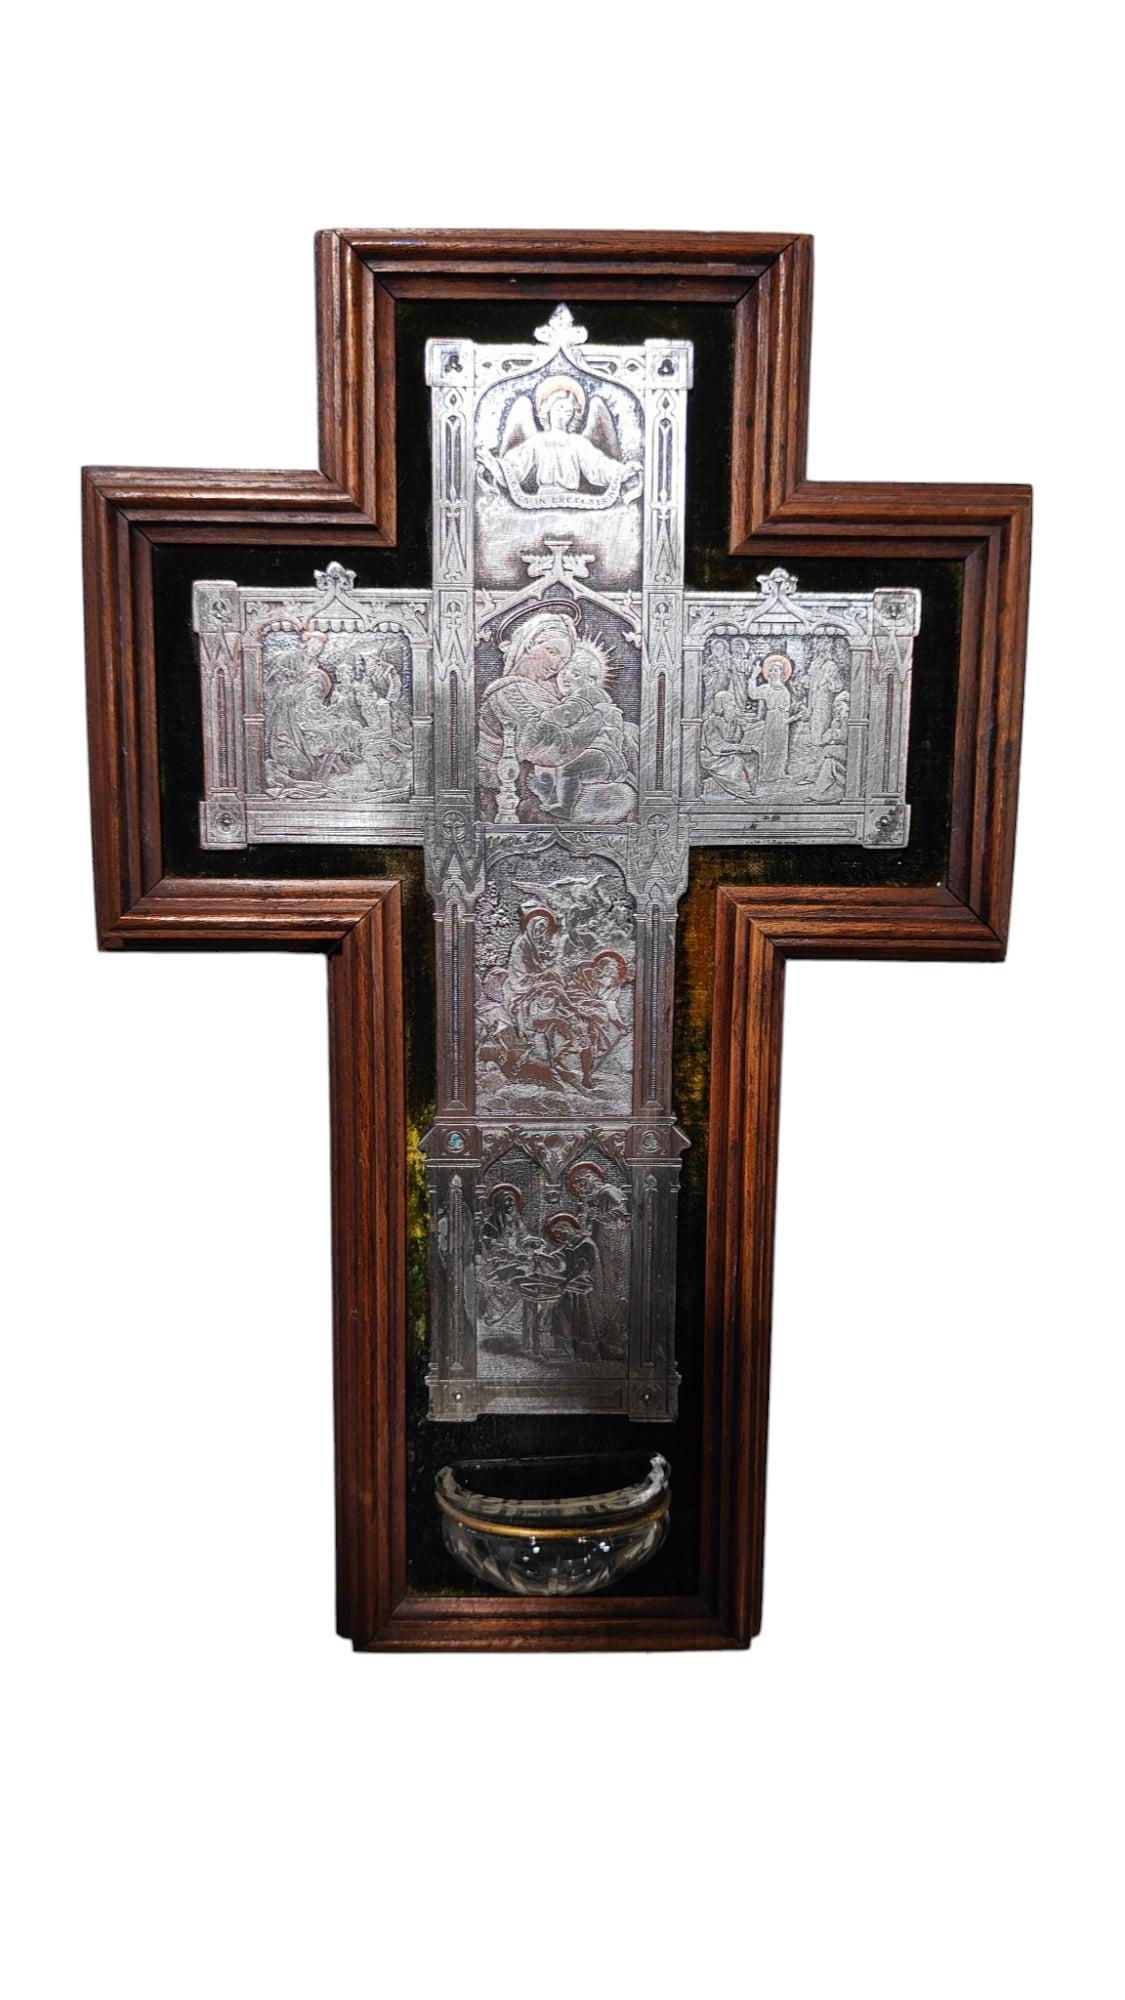 Croix italienne avec pot de Blessing du 19ème siècle
Belle croix italienne du 19e siècle avec un pot de bénédiction en verre sculpté. La croix a une structure en bois et le corps est en cuivre gravé et argenté. Dimensions : 26x17x4 cm : 26x17x4 cm